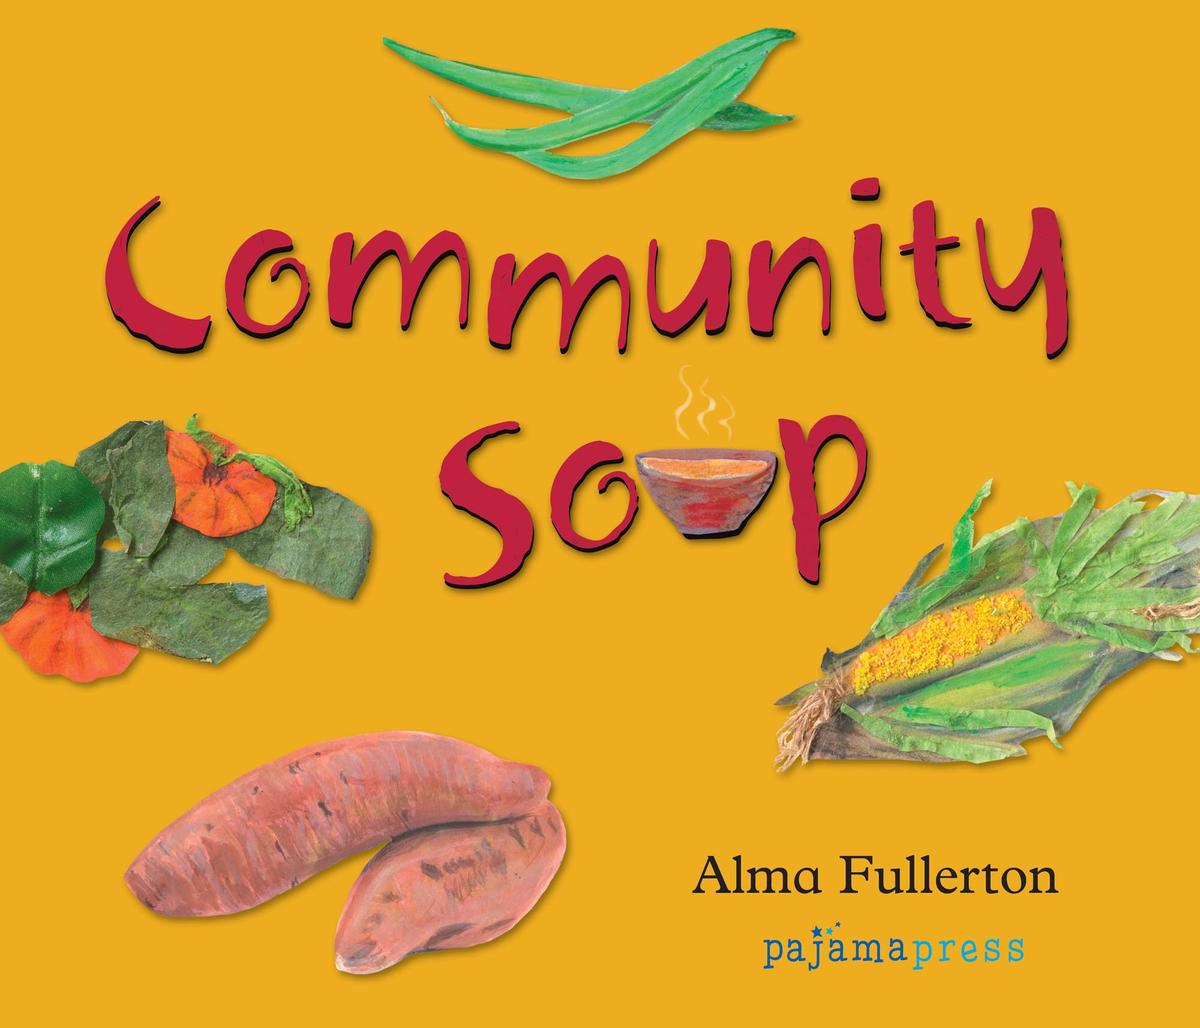 Community Soup